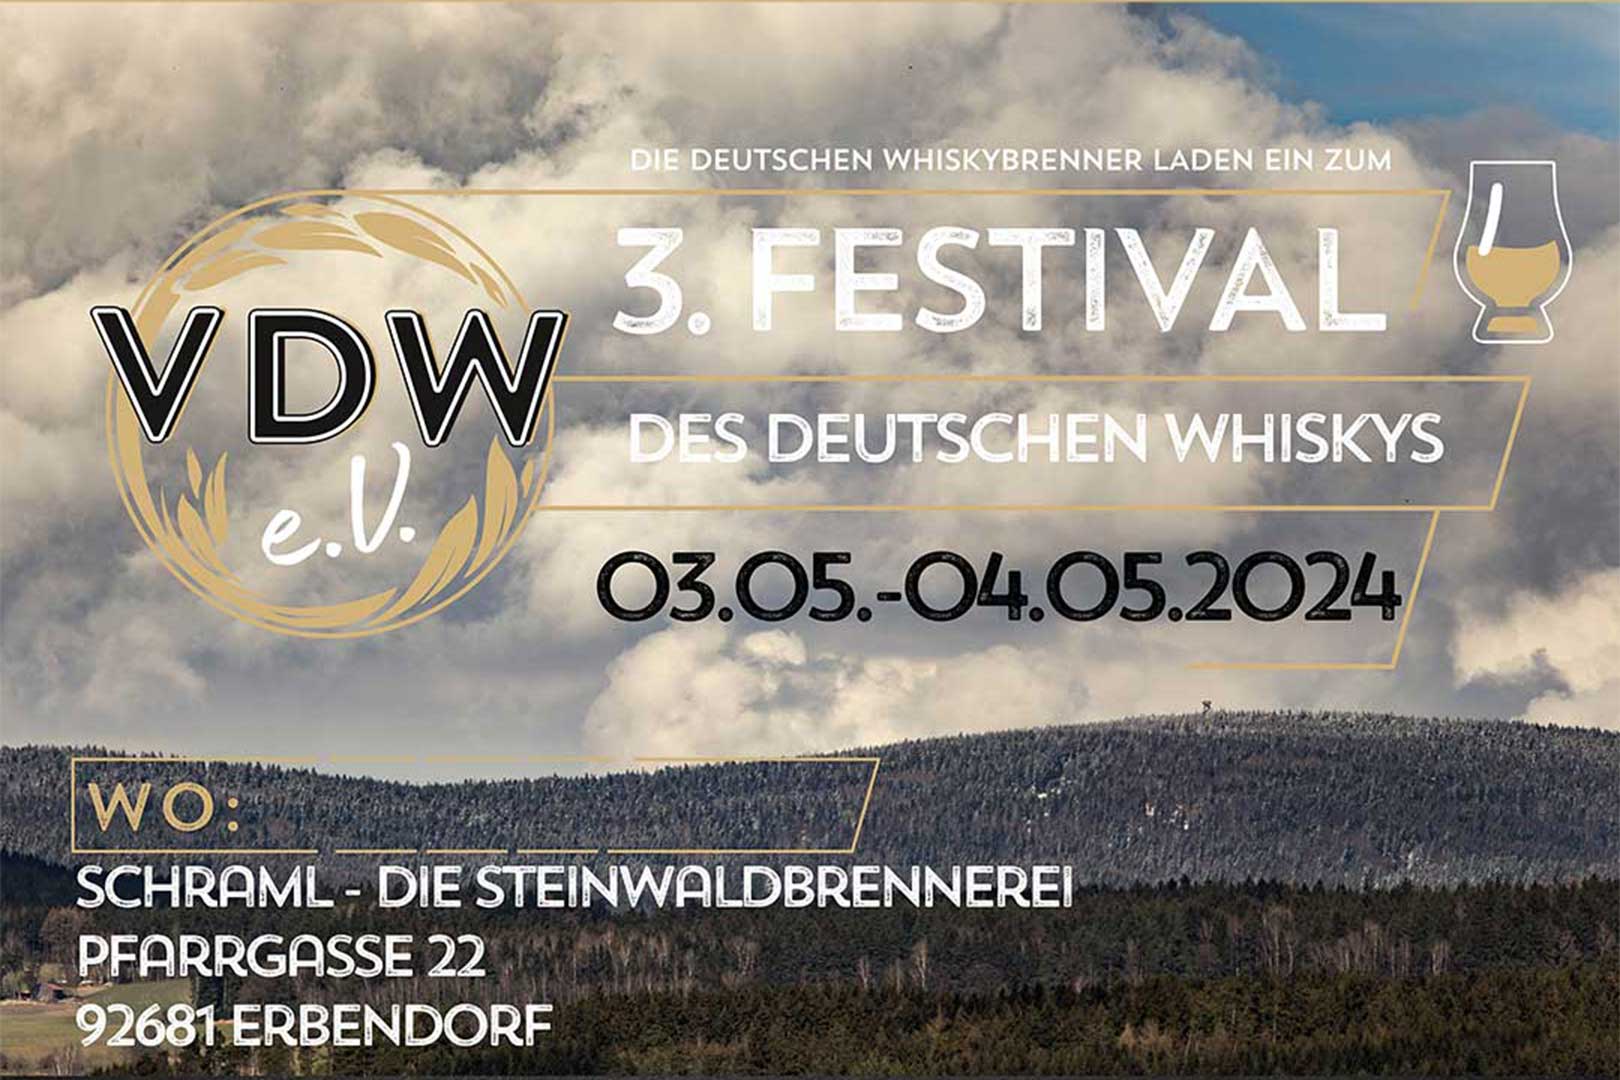 whisky event festival des deutschen whiskys erbendorf WEB AUF 3 2 1620x1080 vwjtfxqlwgxk